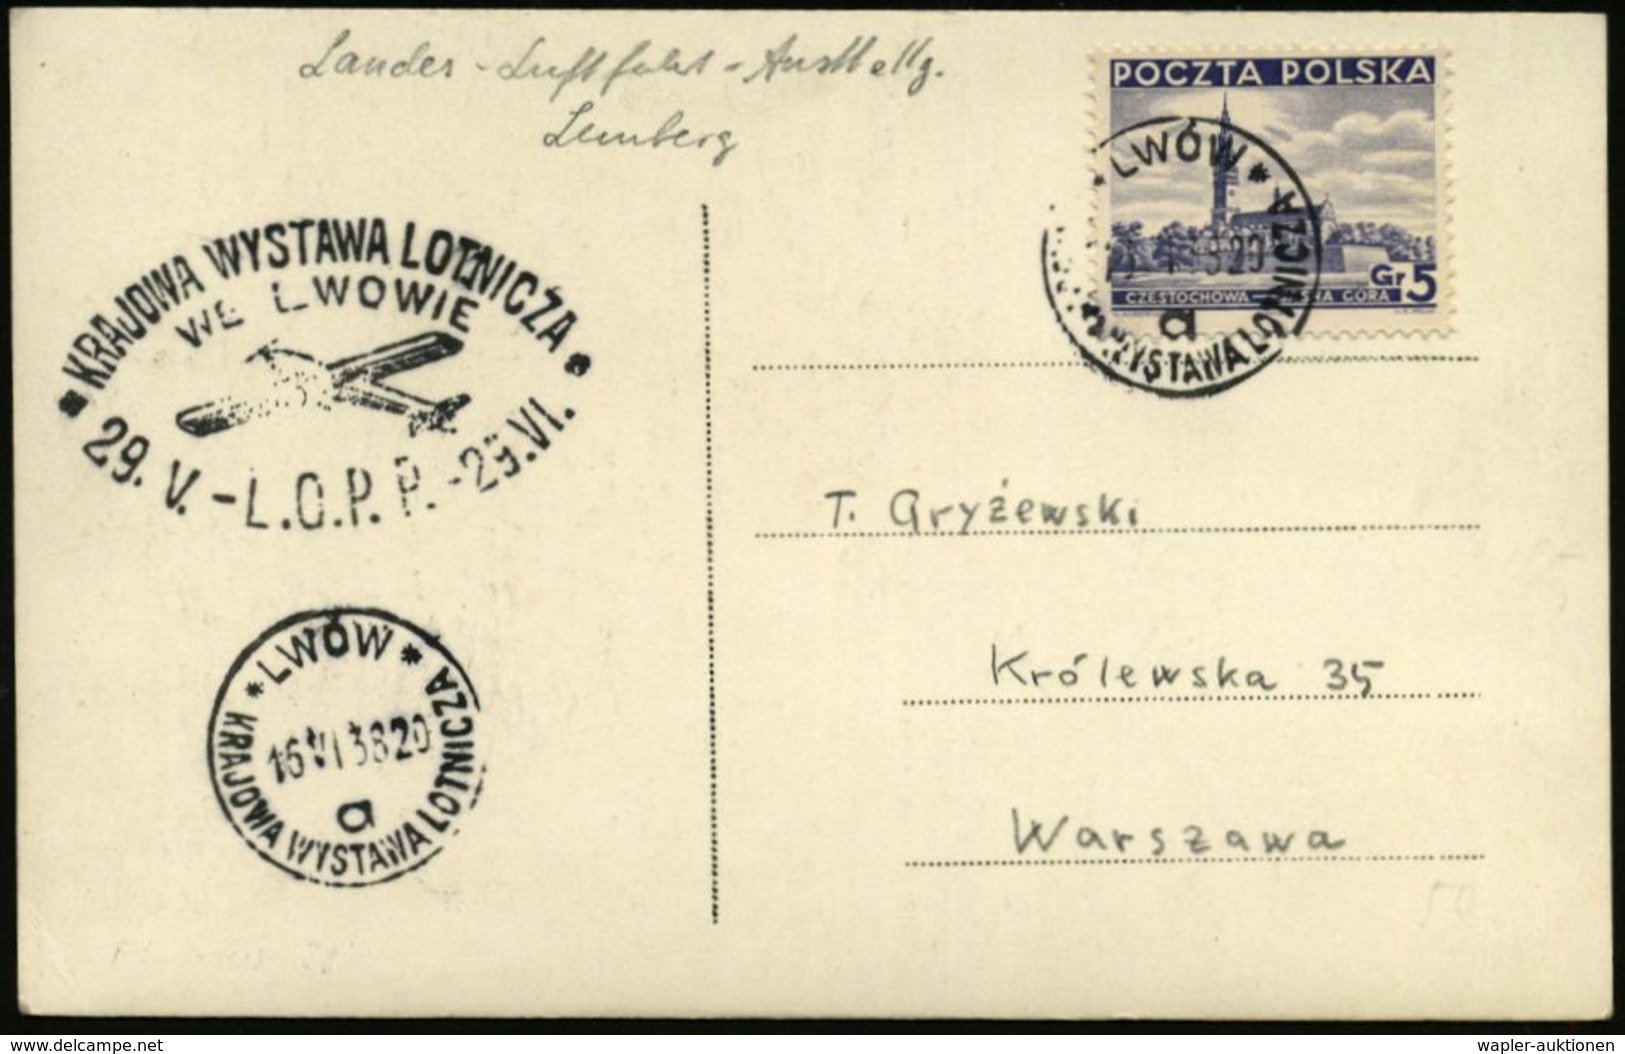 LUFTFAHRT-AUSSTELLUNGEN & KONGRESSE : POLEN 1938 (16.4.) SSt: LWOW/a/KRAJOWA WYSTAWA LOTNICZA (Luftfahrt-Ausst. Lemberg) - Flugzeuge